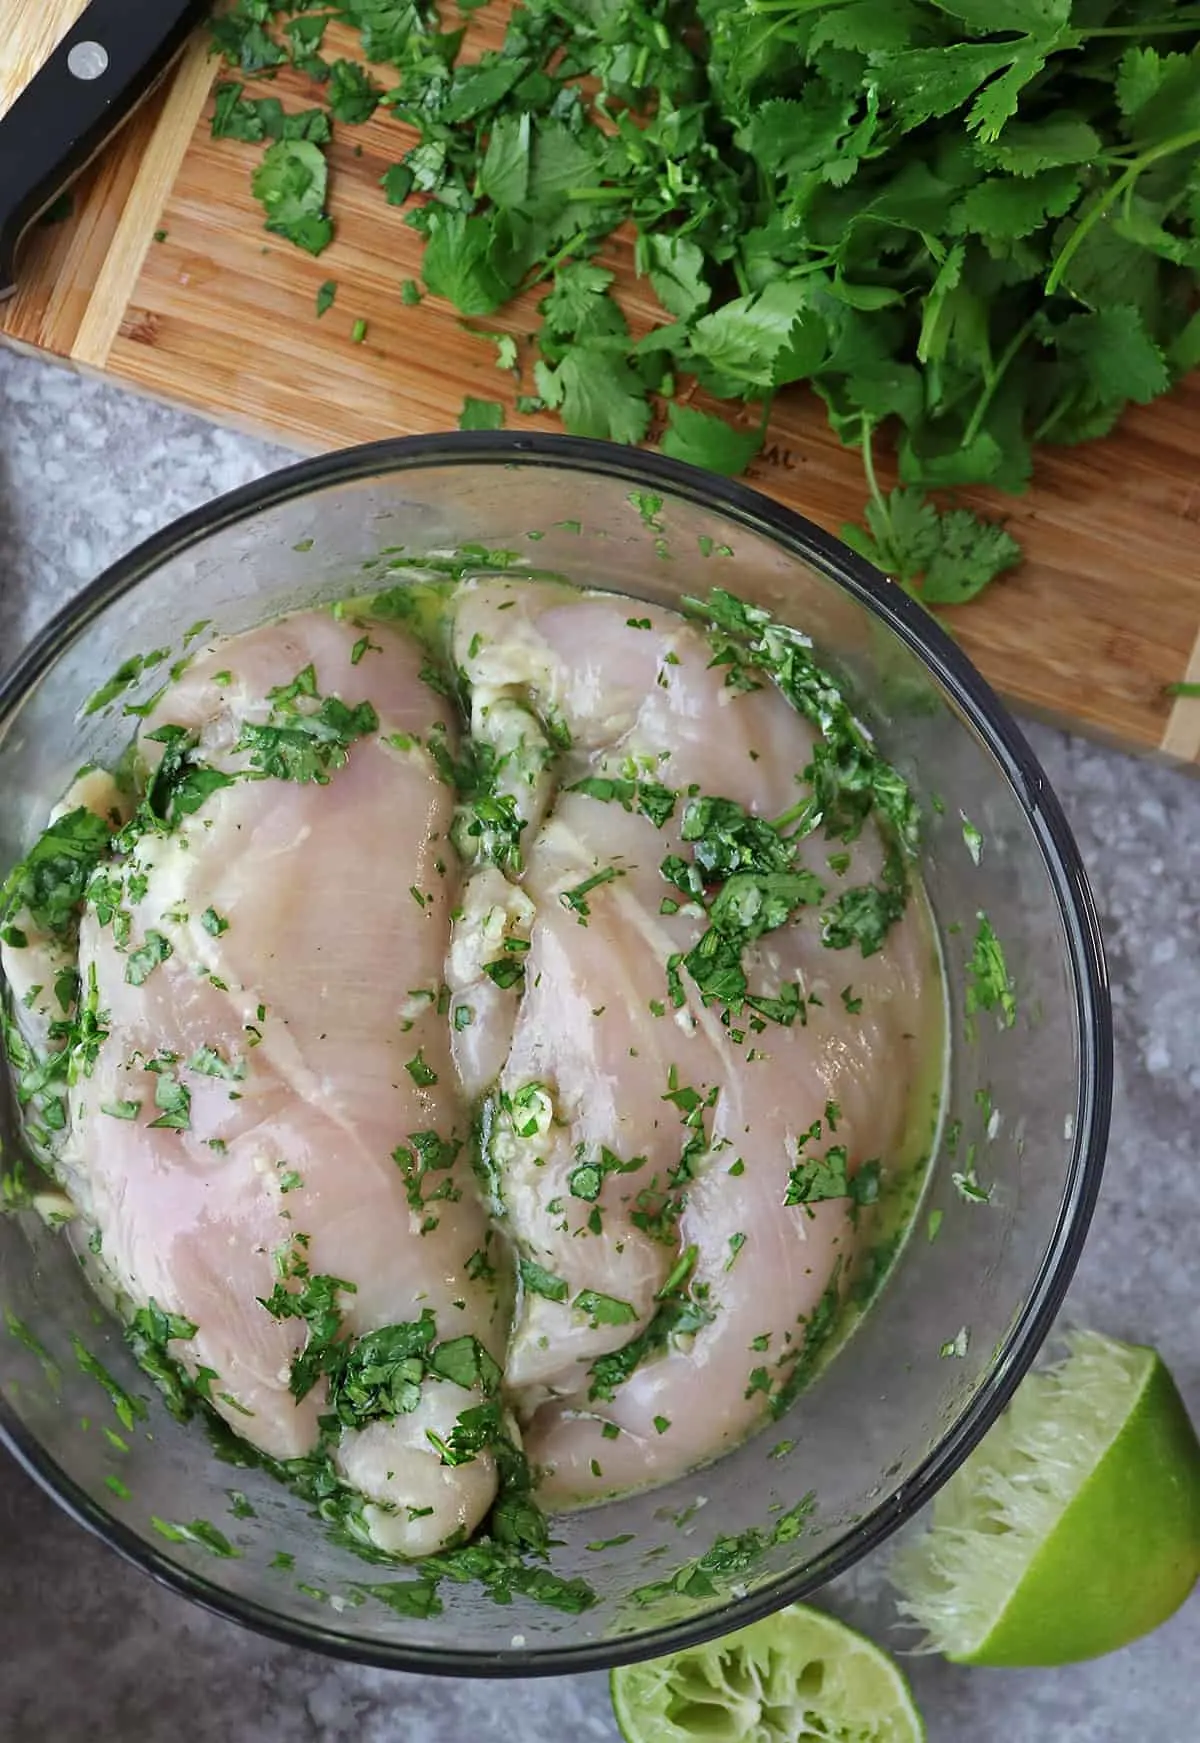 Marinating chicken to make tasty cilantro lime chicken